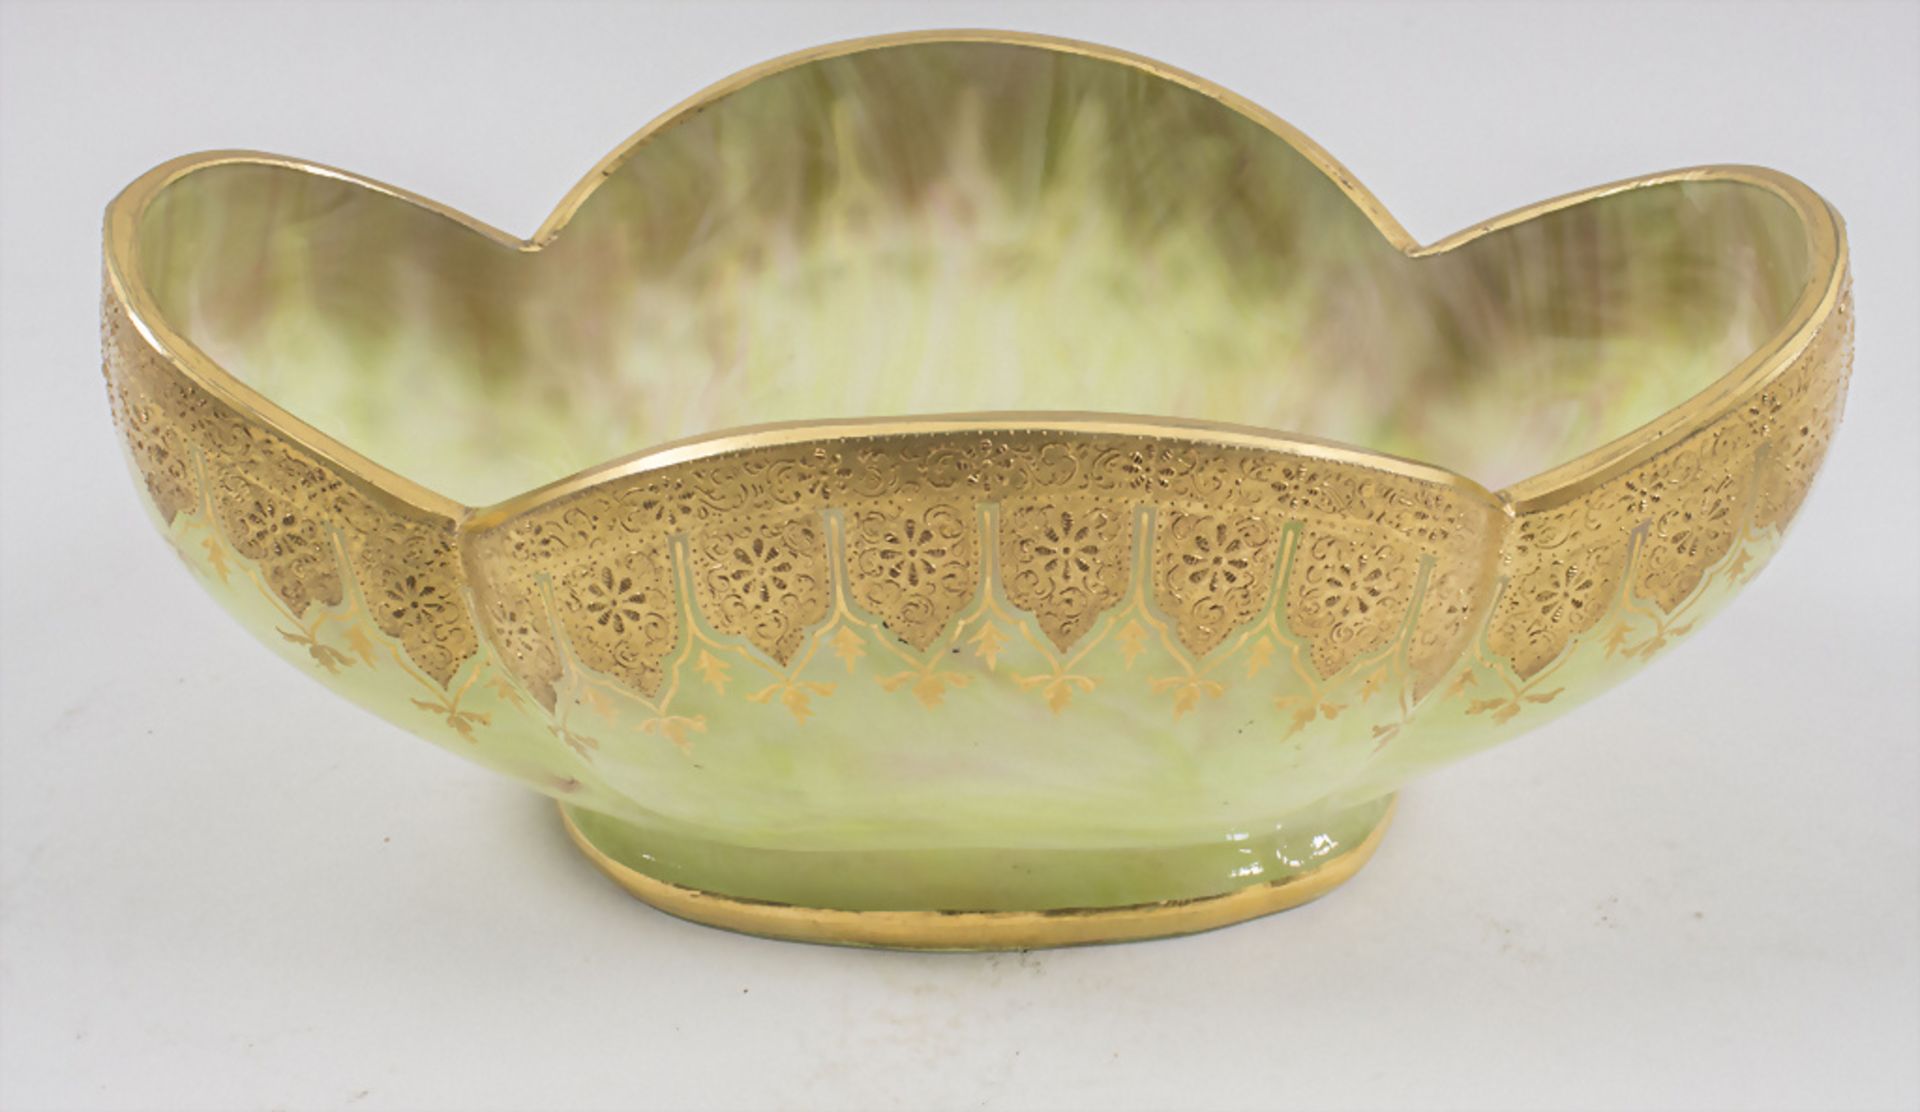 Große Jugendstil Karneol-Schale / A large glass bowl, Johann Loetz Witwe, Klostermühle, um 1890